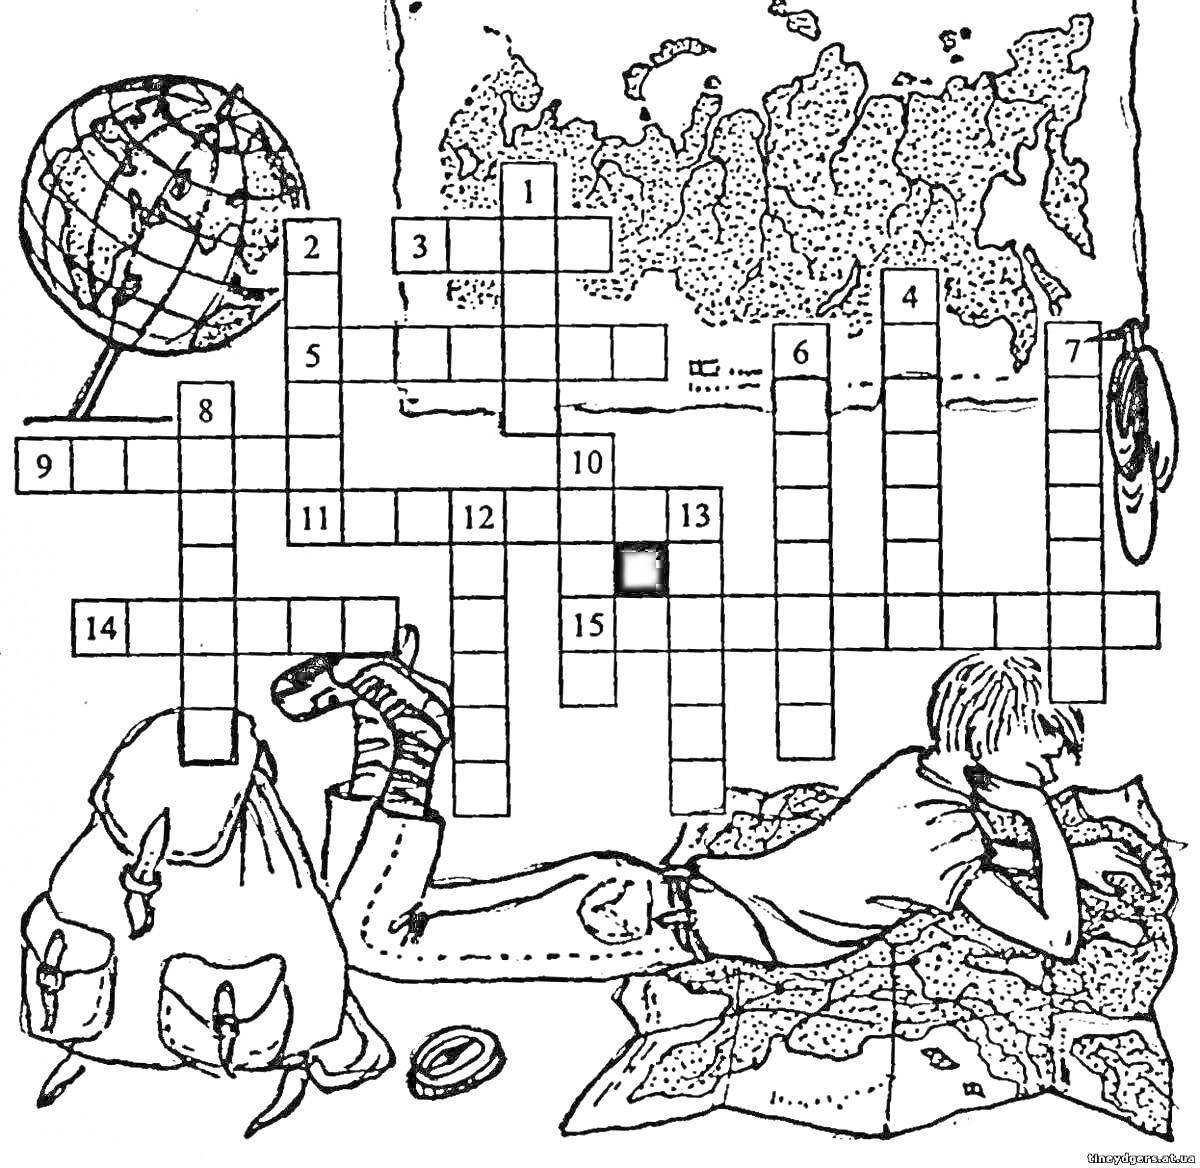 Раскраска Кроссворд на тему путешествий, с изображением глобуса, карты мира, рюкзака и лежащего человека